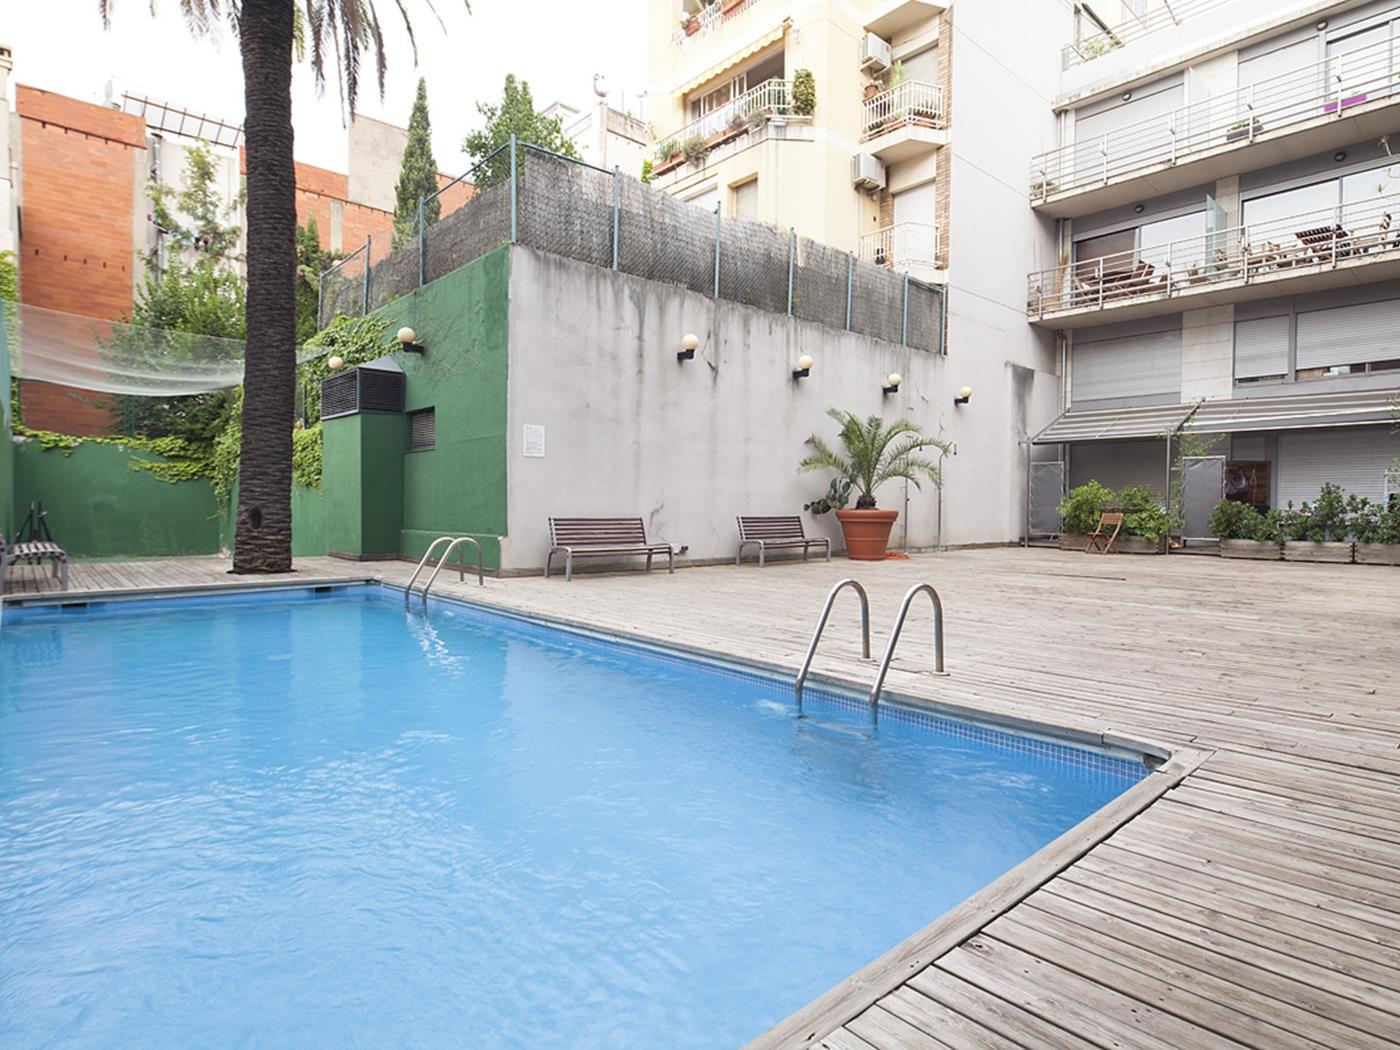 Duplex con piscina a Barcellona per 8 - My Space Barcelona Appartamenti